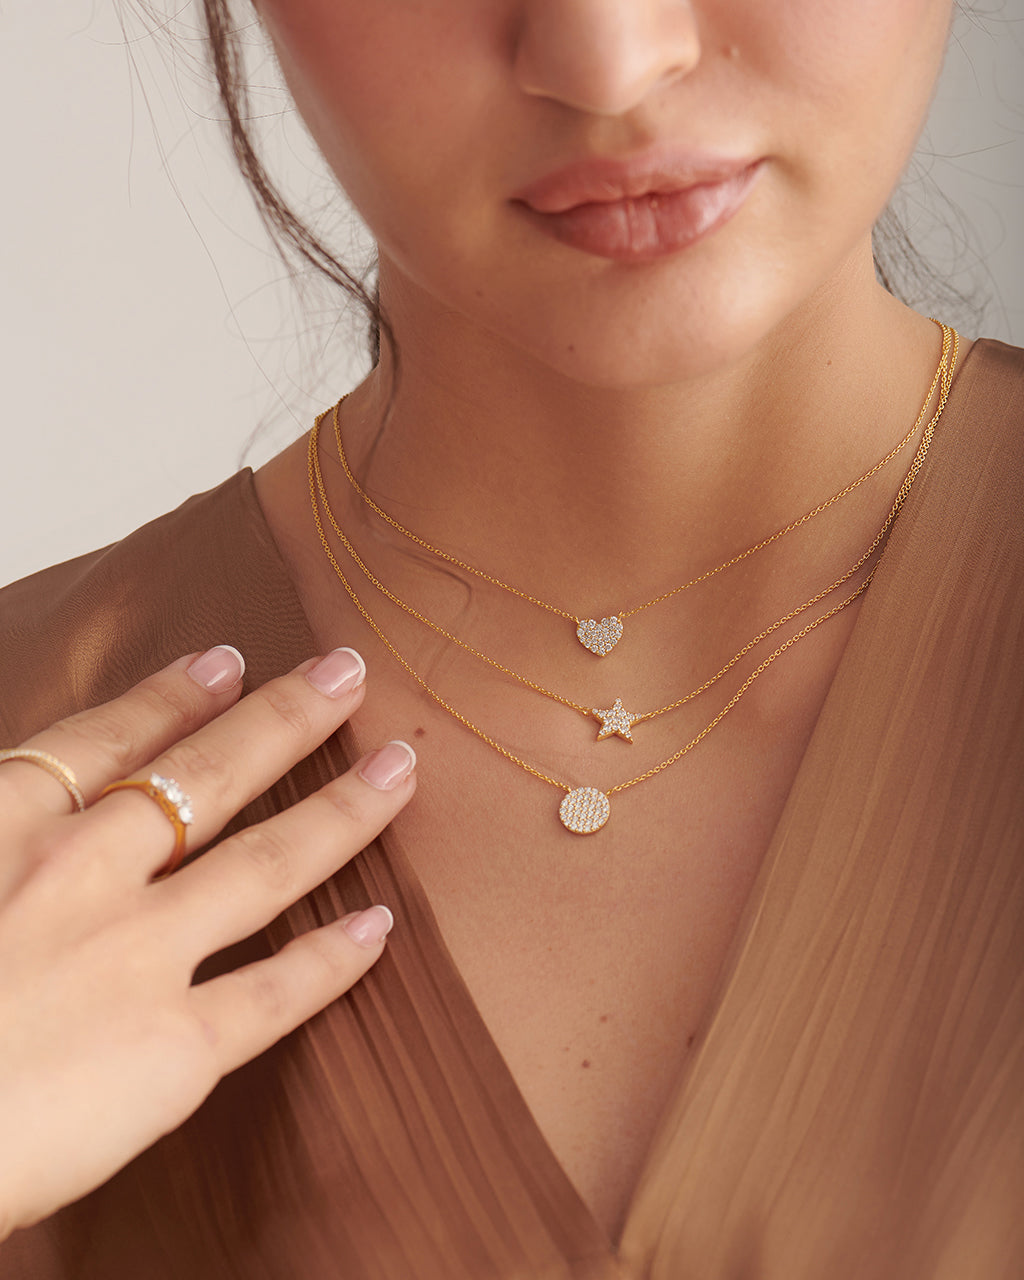 Heart Pave Diamond Necklace